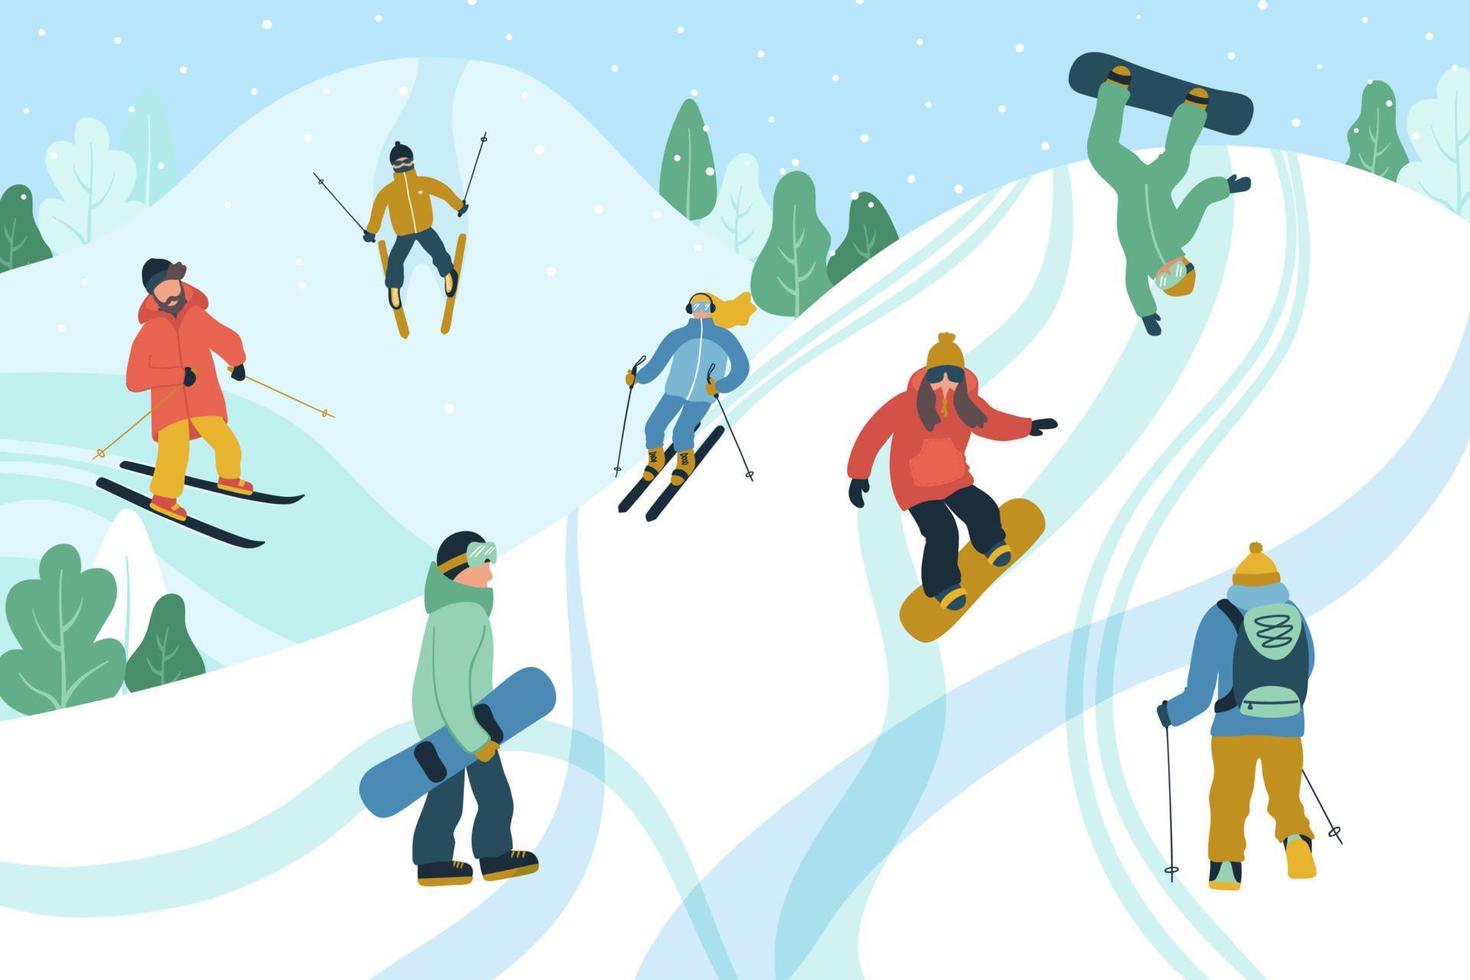 illustratie met jongeren in bergresort. skiën en snowboarden. winterseizoen vector ontwerp.